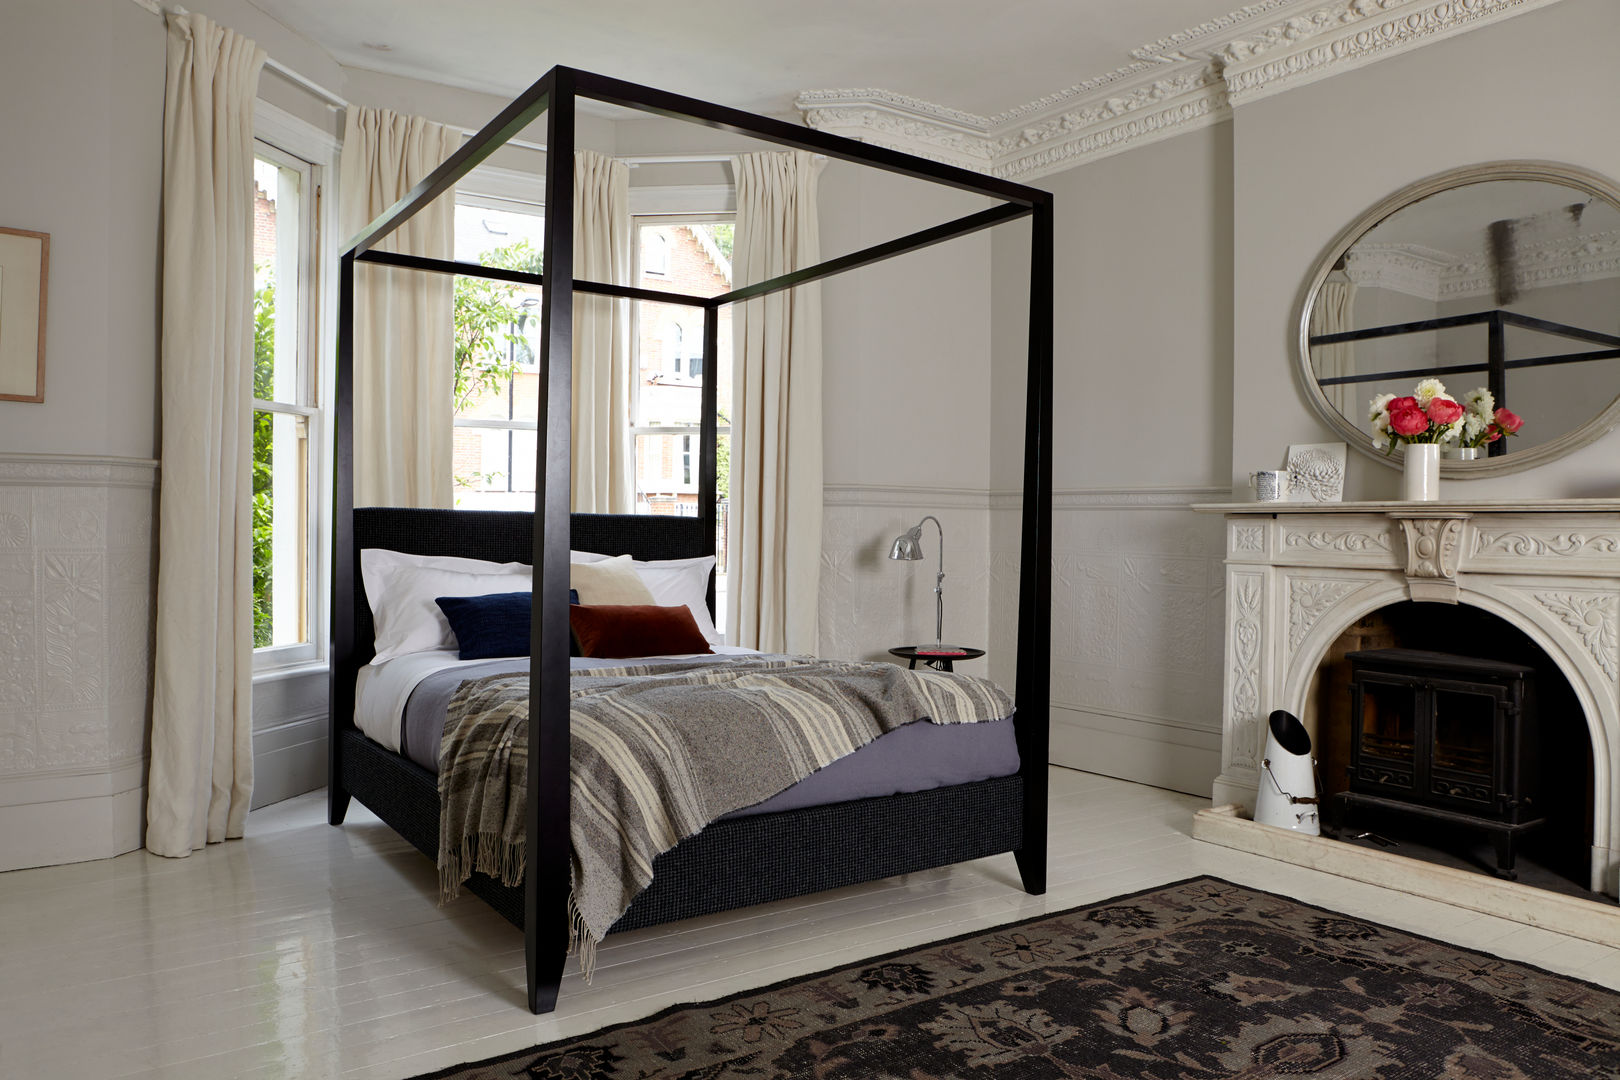 Beds, Sofas & Stuff Sofas & Stuff Dormitorios – Ideas, diseños y decoración Camas y cabeceras